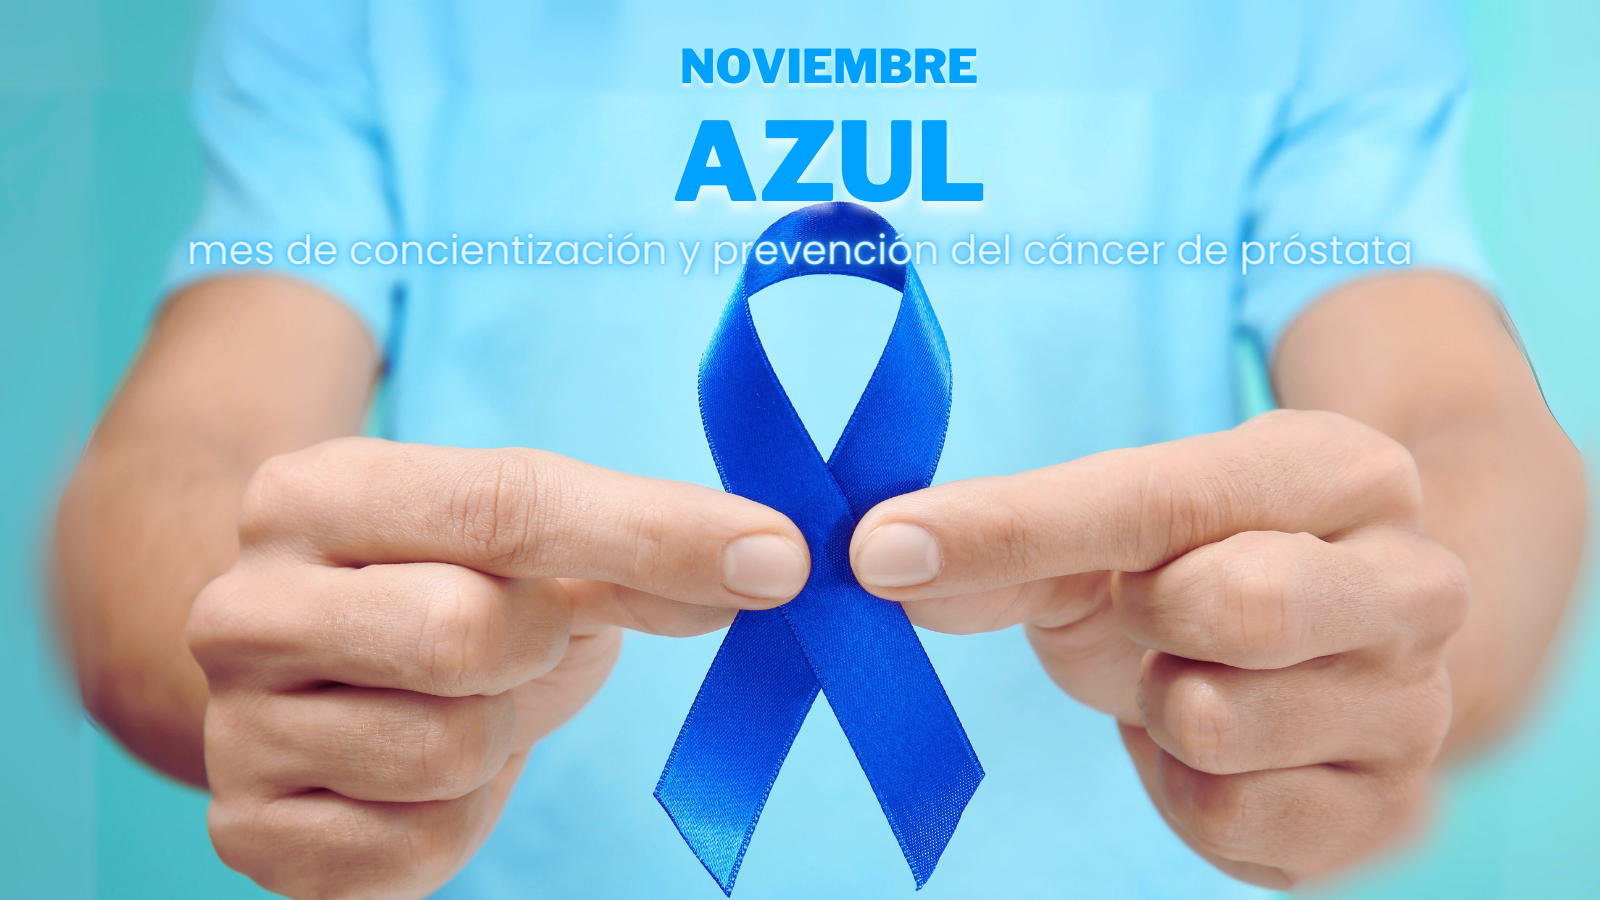 Noviembre Azul: concientización y prevención del cáncer de próstata